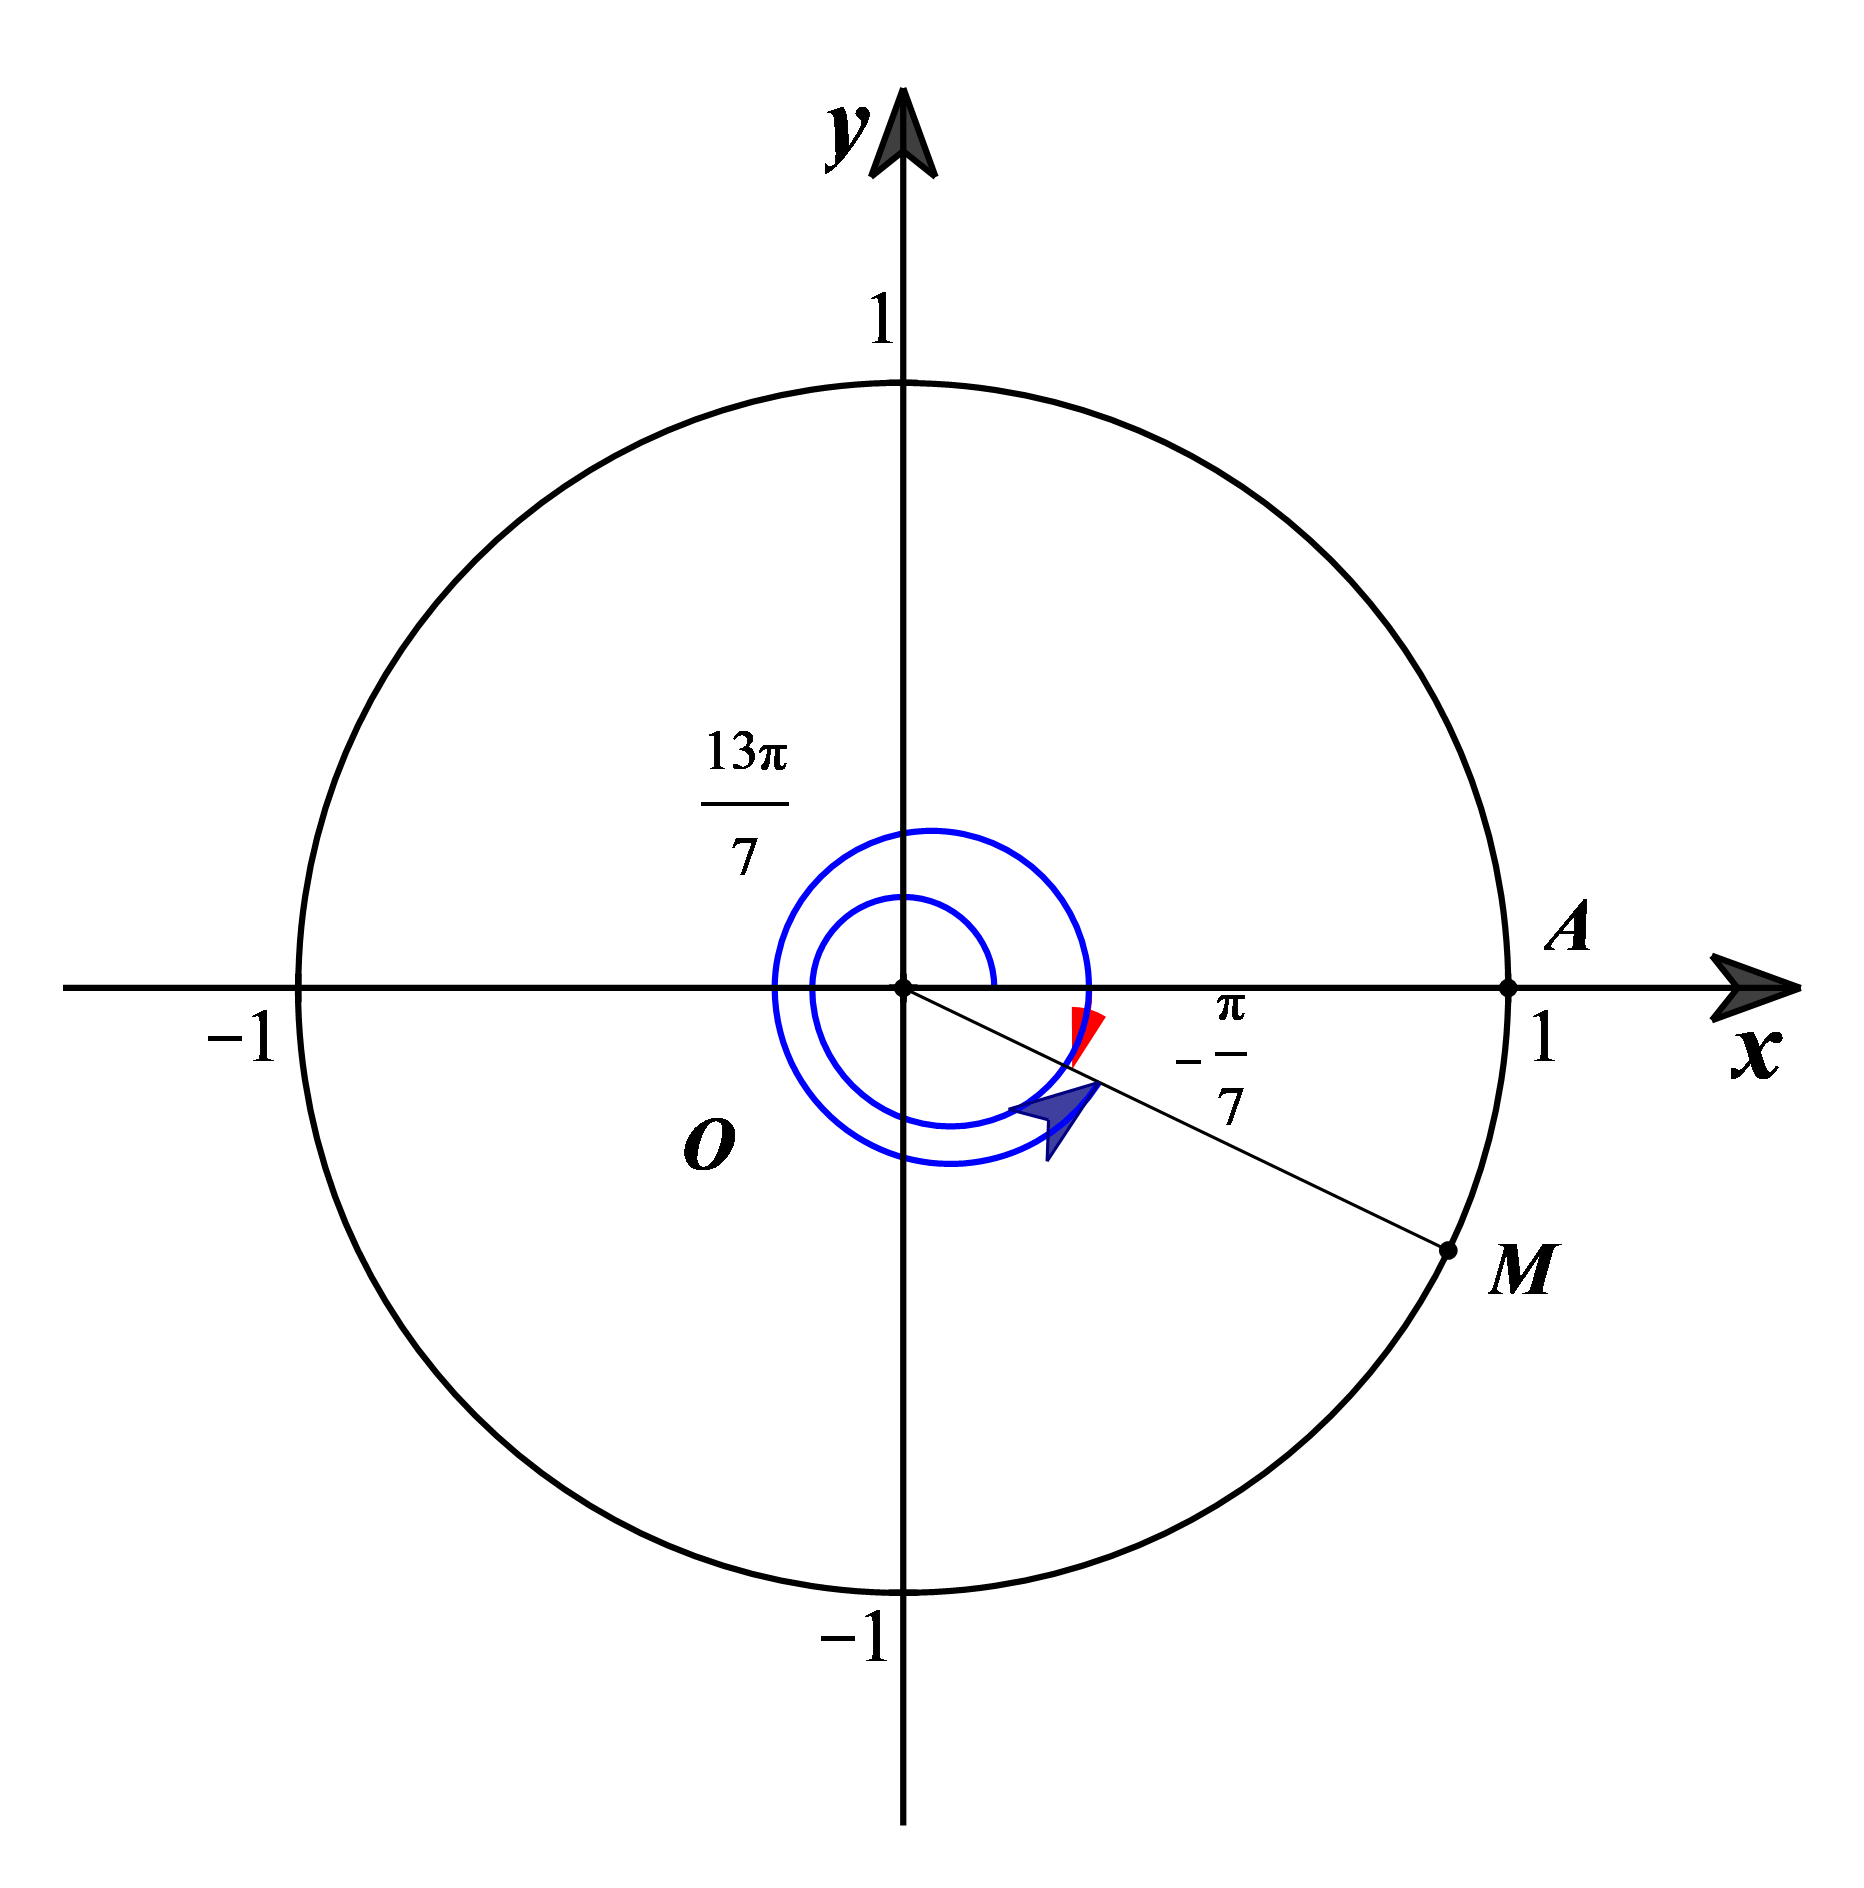 Trên đường tròn lượng giác, góc lượng giác 13pi/7 có cùng điểm biểu diễn